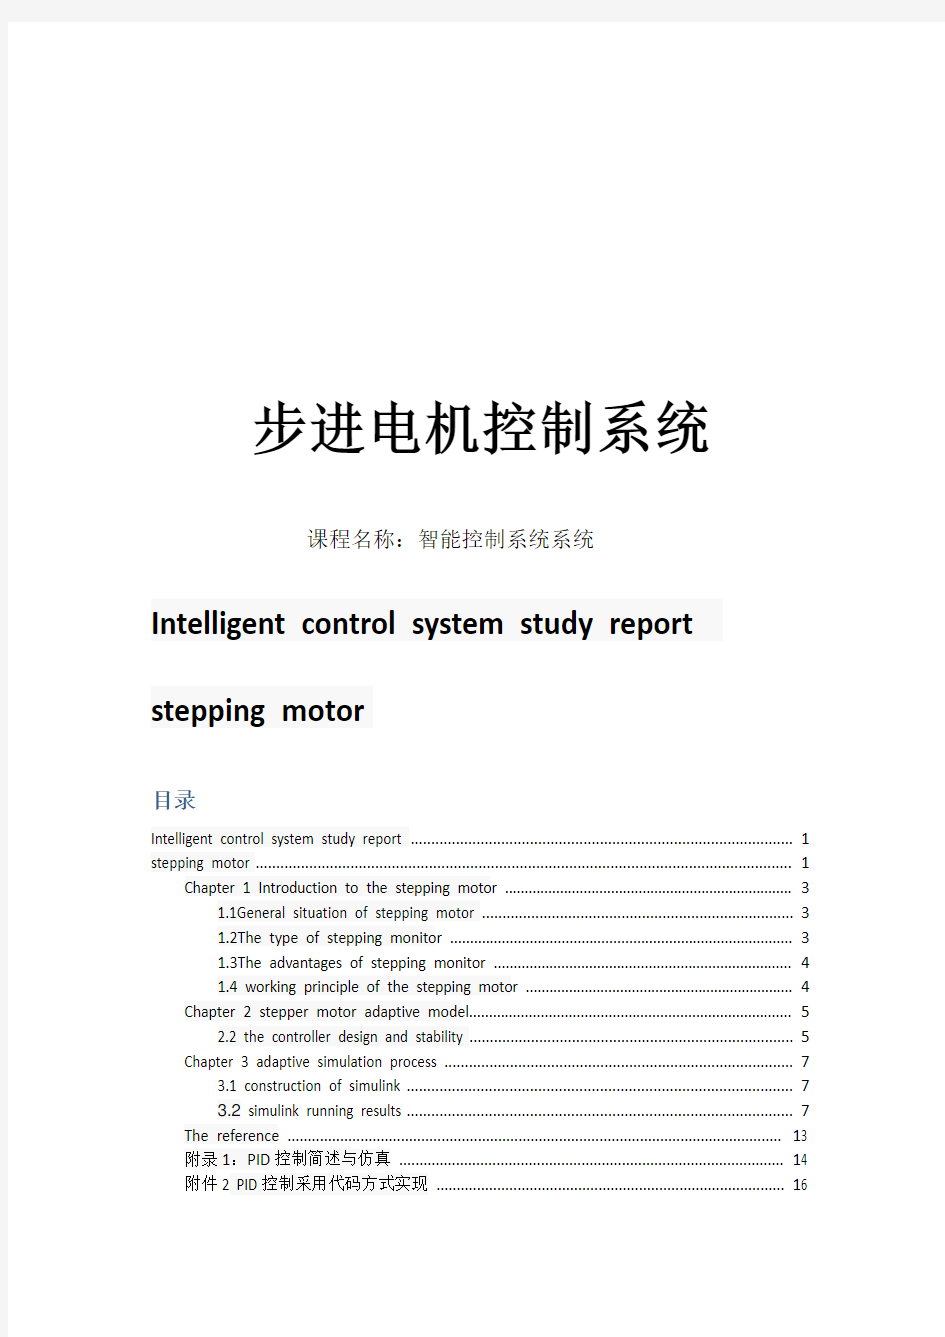 北京交通大学智能控制系统课程设计